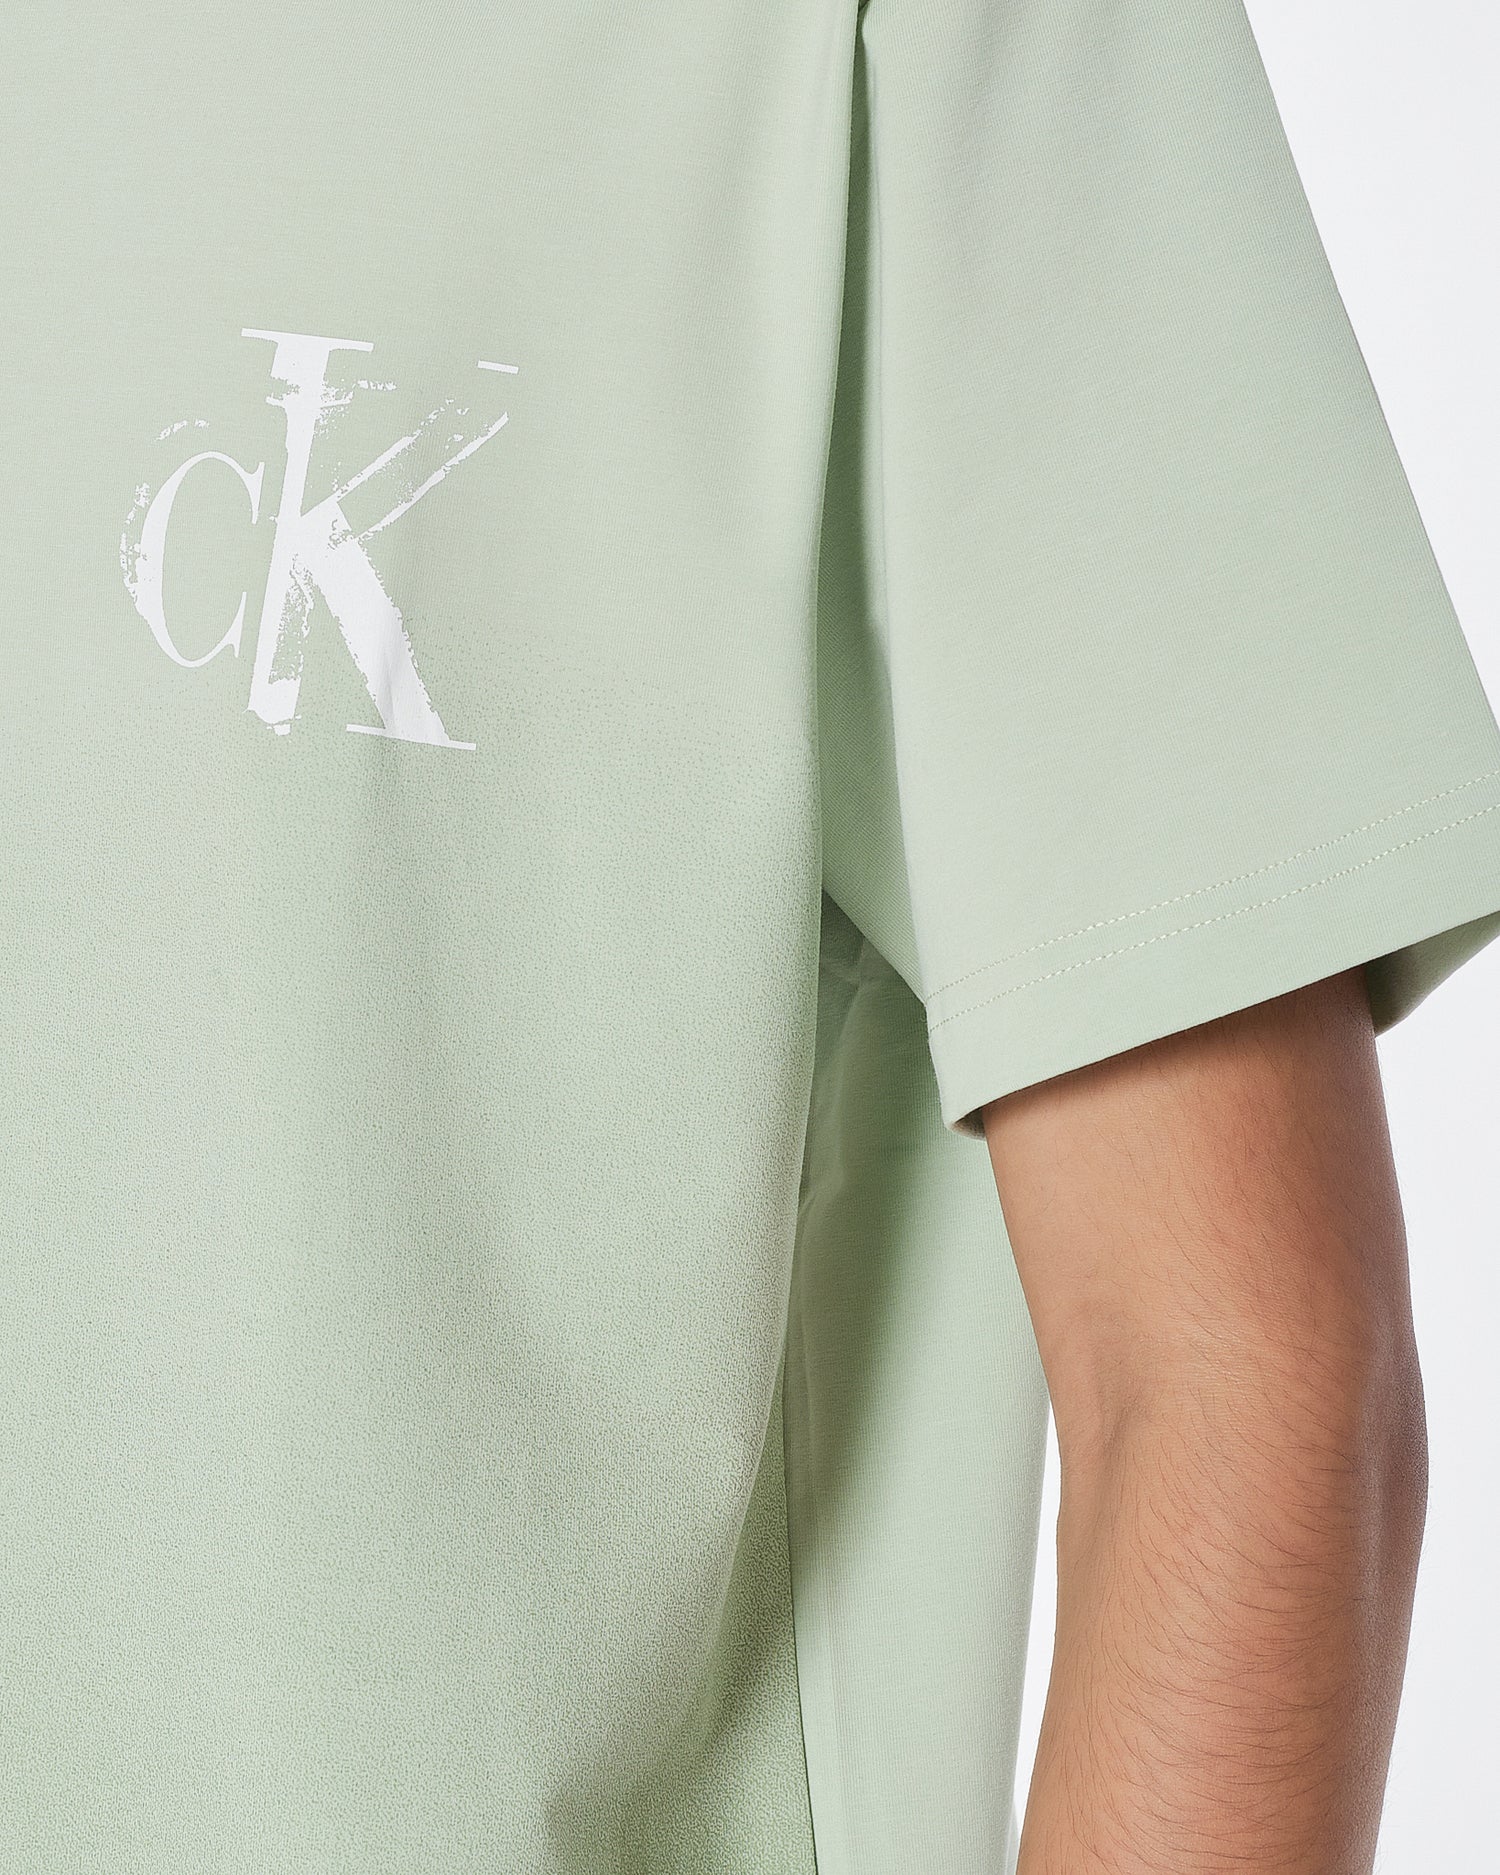 CK Gradient Color Men Green T-Shirt 14.90